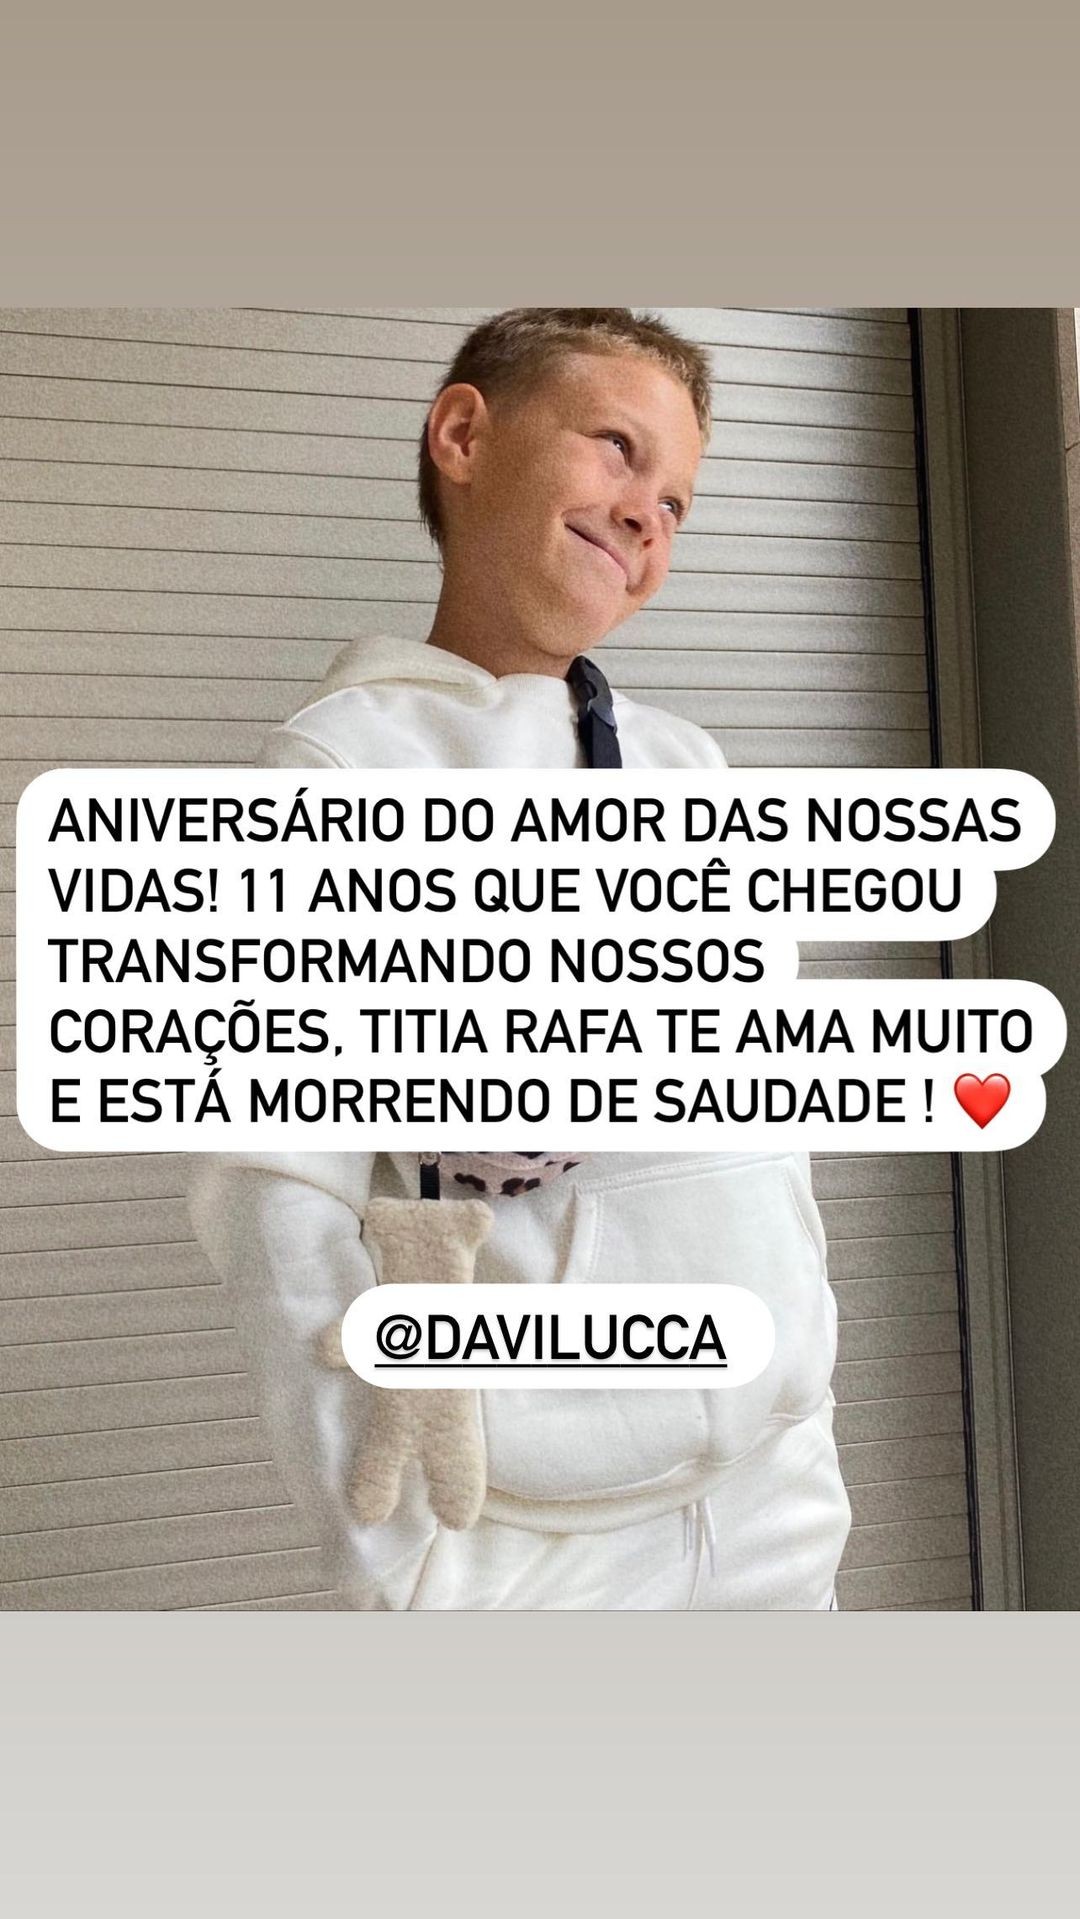 Rafaella Santos deixa mensagem carinhosa para Davi Lucca nas redes no aniversário de 11 anos do sobrinho, filho de Neymar Jr. (Foto: Reprodução/Instagram)